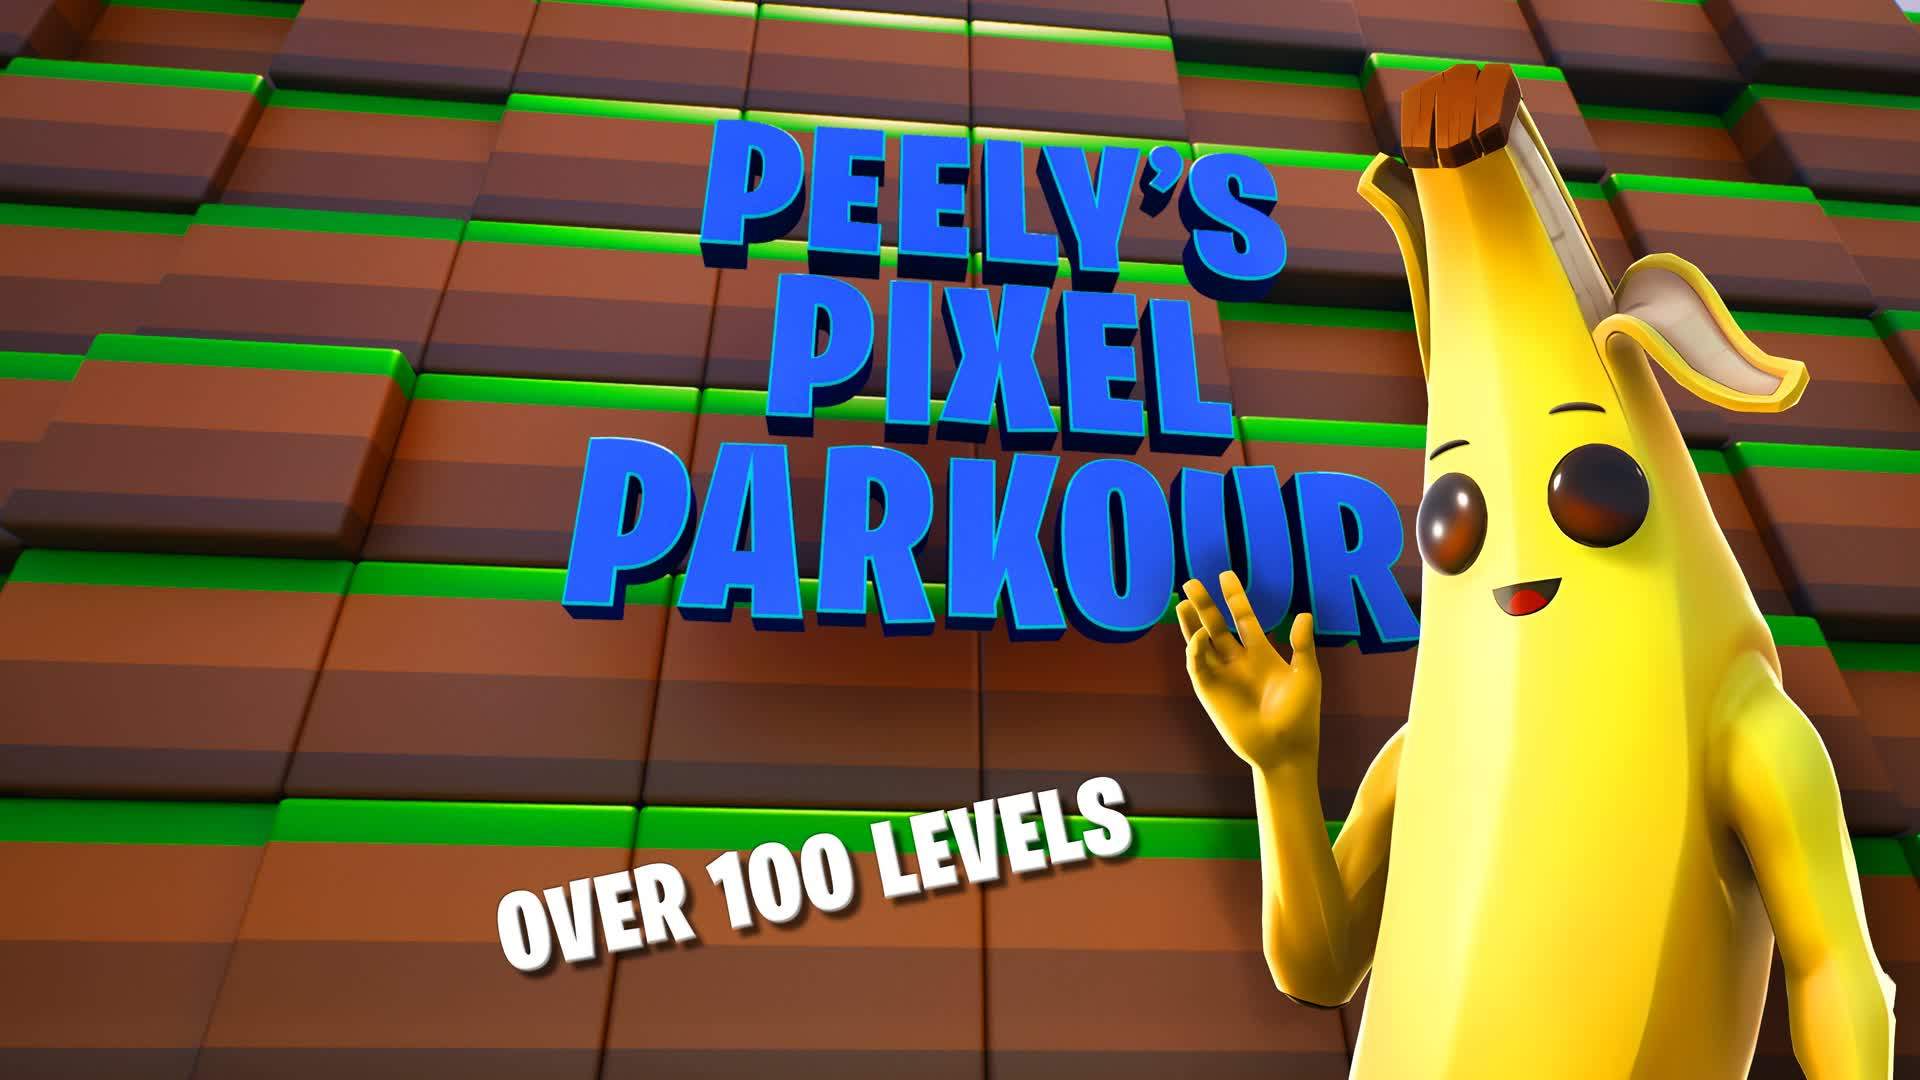 Peely's Pixel Parkour